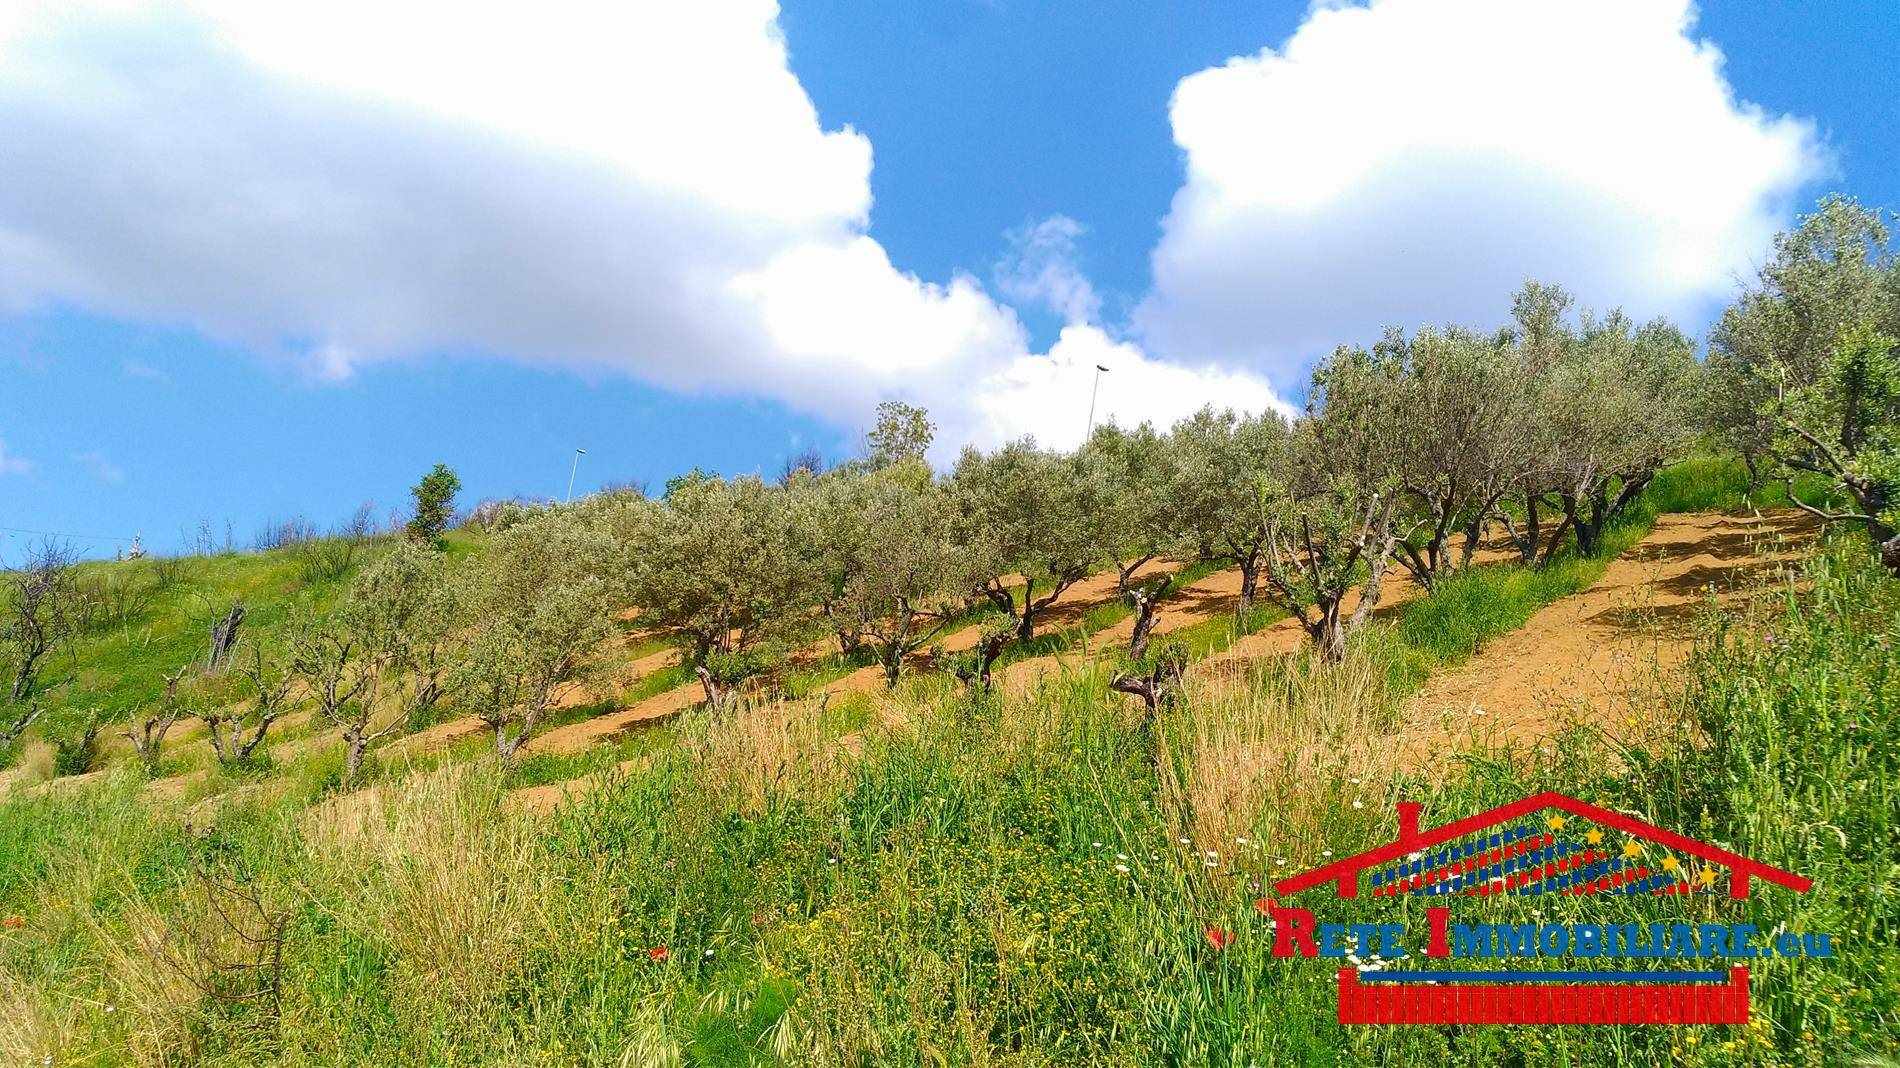 Terreno Agricolo in vendita a Cosenza, 9999 locali, zona Località: TIMPONE ULIVI, prezzo € 300.000 | PortaleAgenzieImmobiliari.it